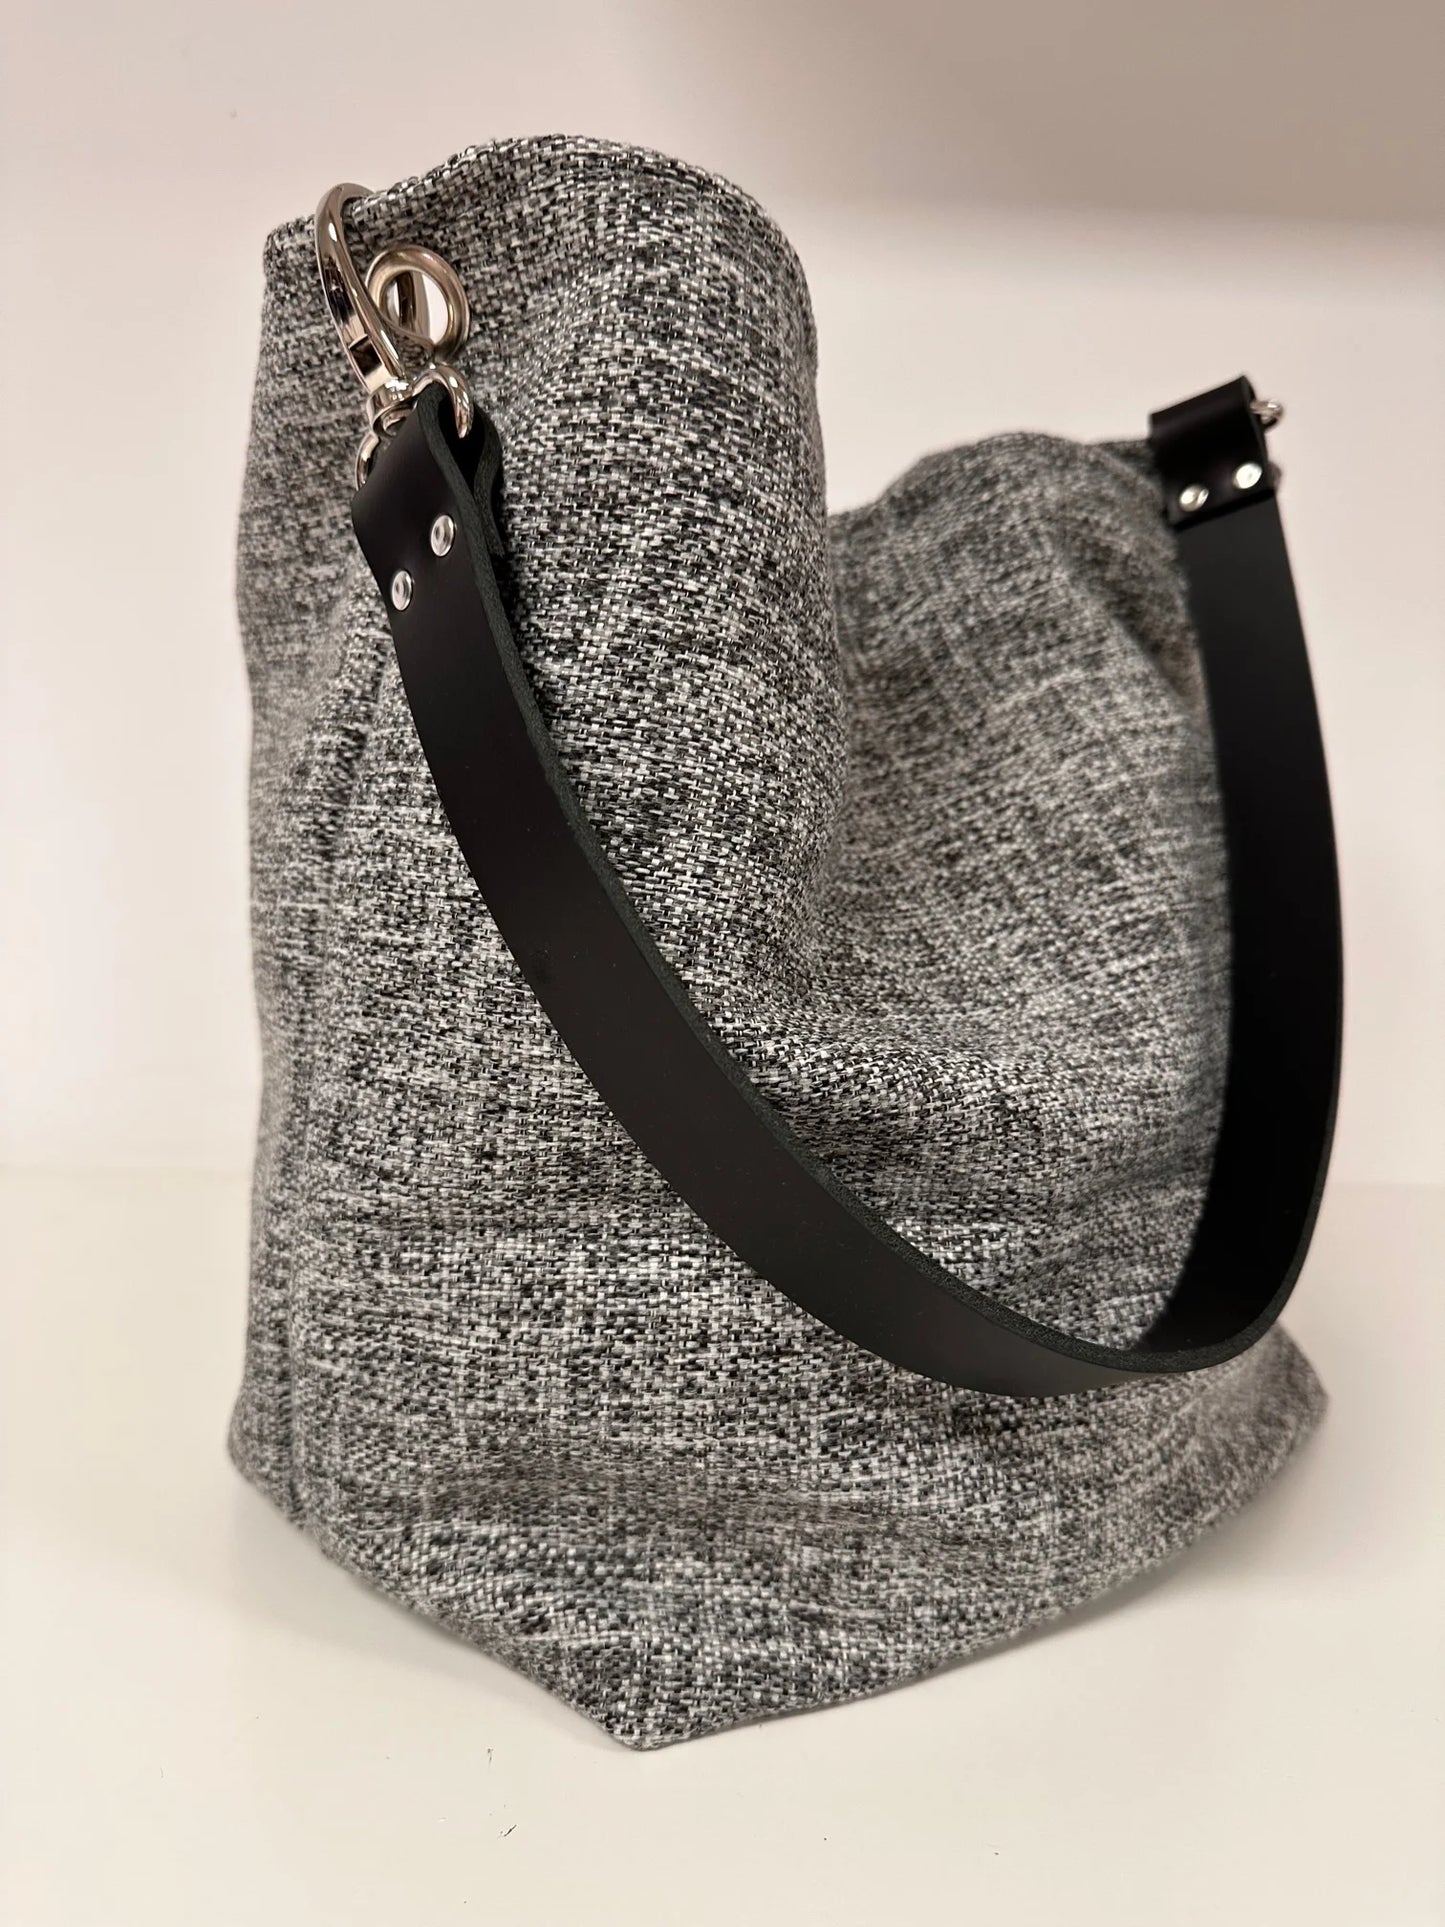 Le sac hobo gris chiné et son anse en cuir  noir.